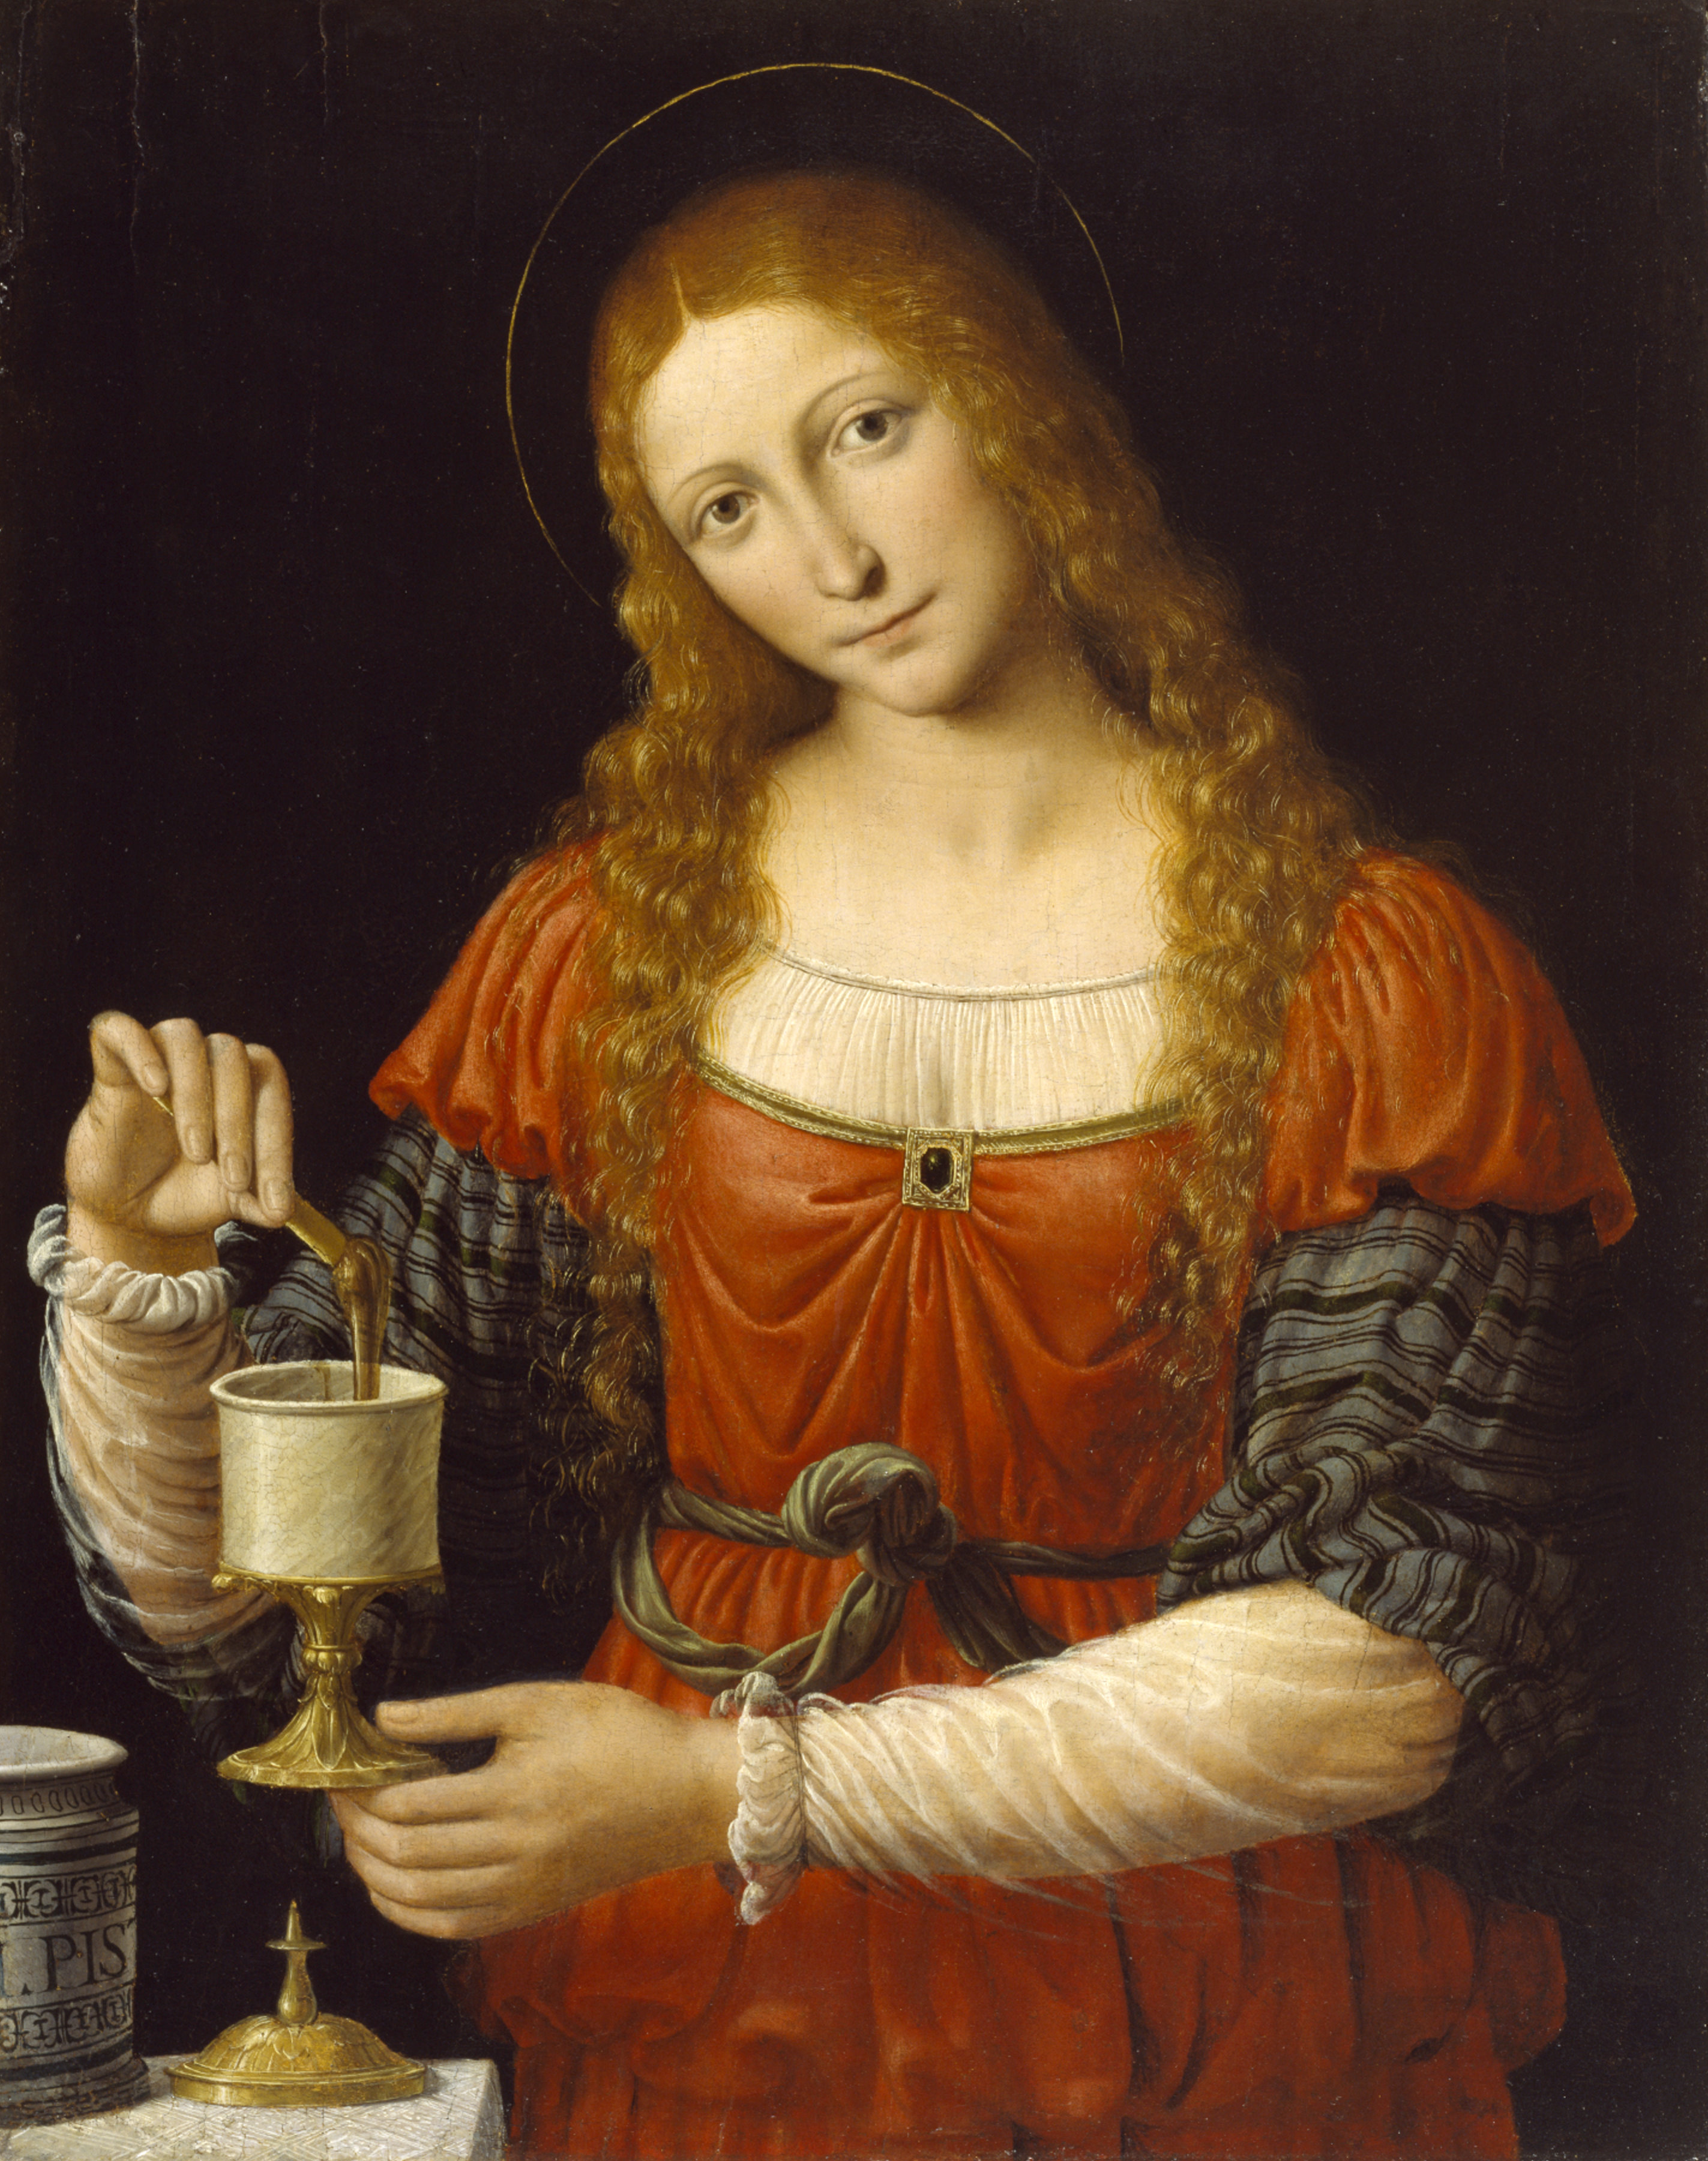 'Mary Magdalene', Andrea Solario and Bernardino Luini (ca. 1524 AD), at The Walters Art Museum